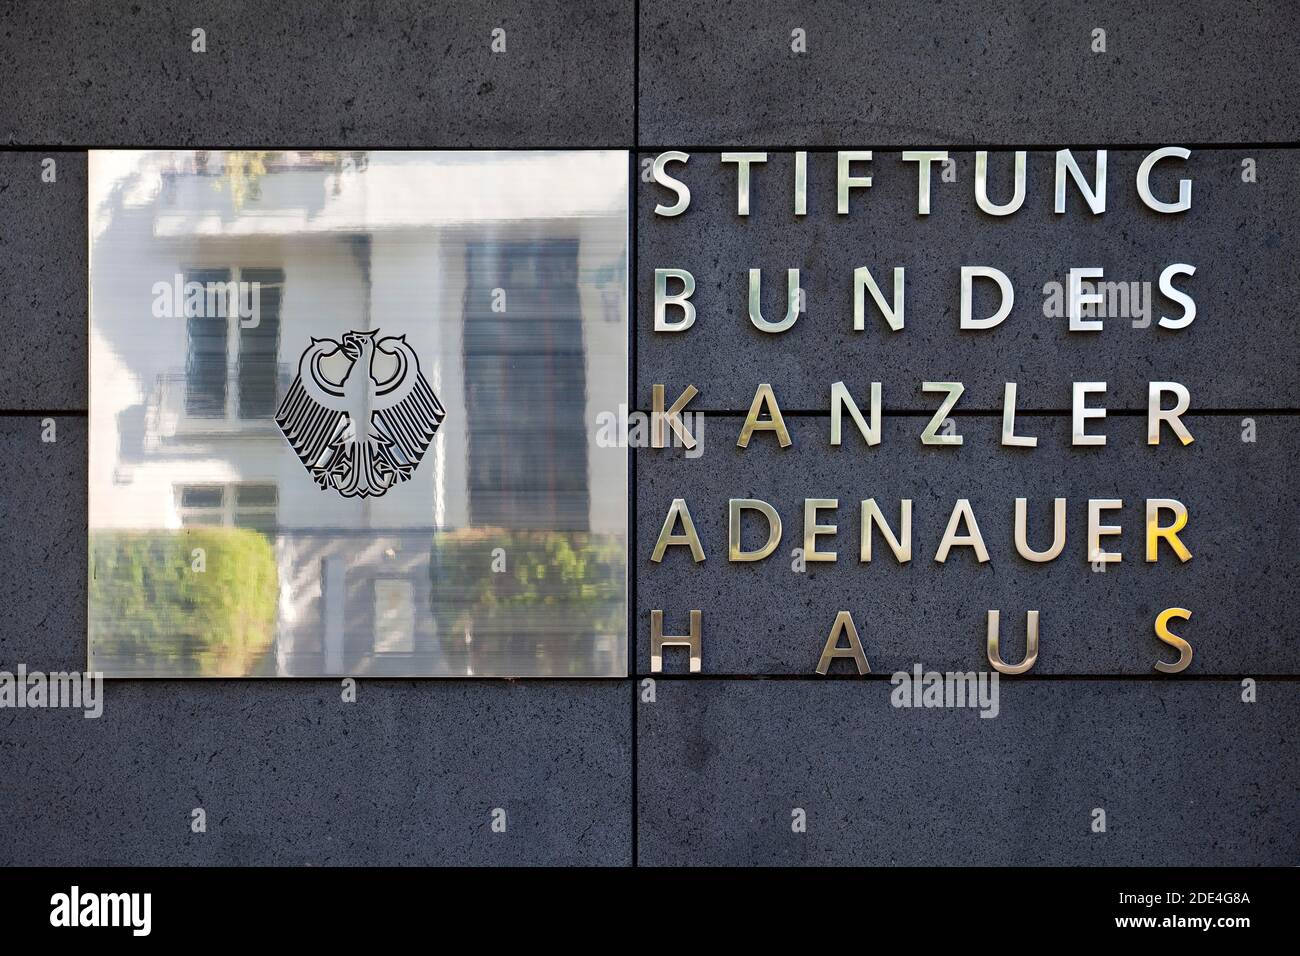 Bundeskanzler-Adenauer-Haus-Stiftung, Bad Honnef, Nordrhein-Westfalen, Deutschland Stockfoto